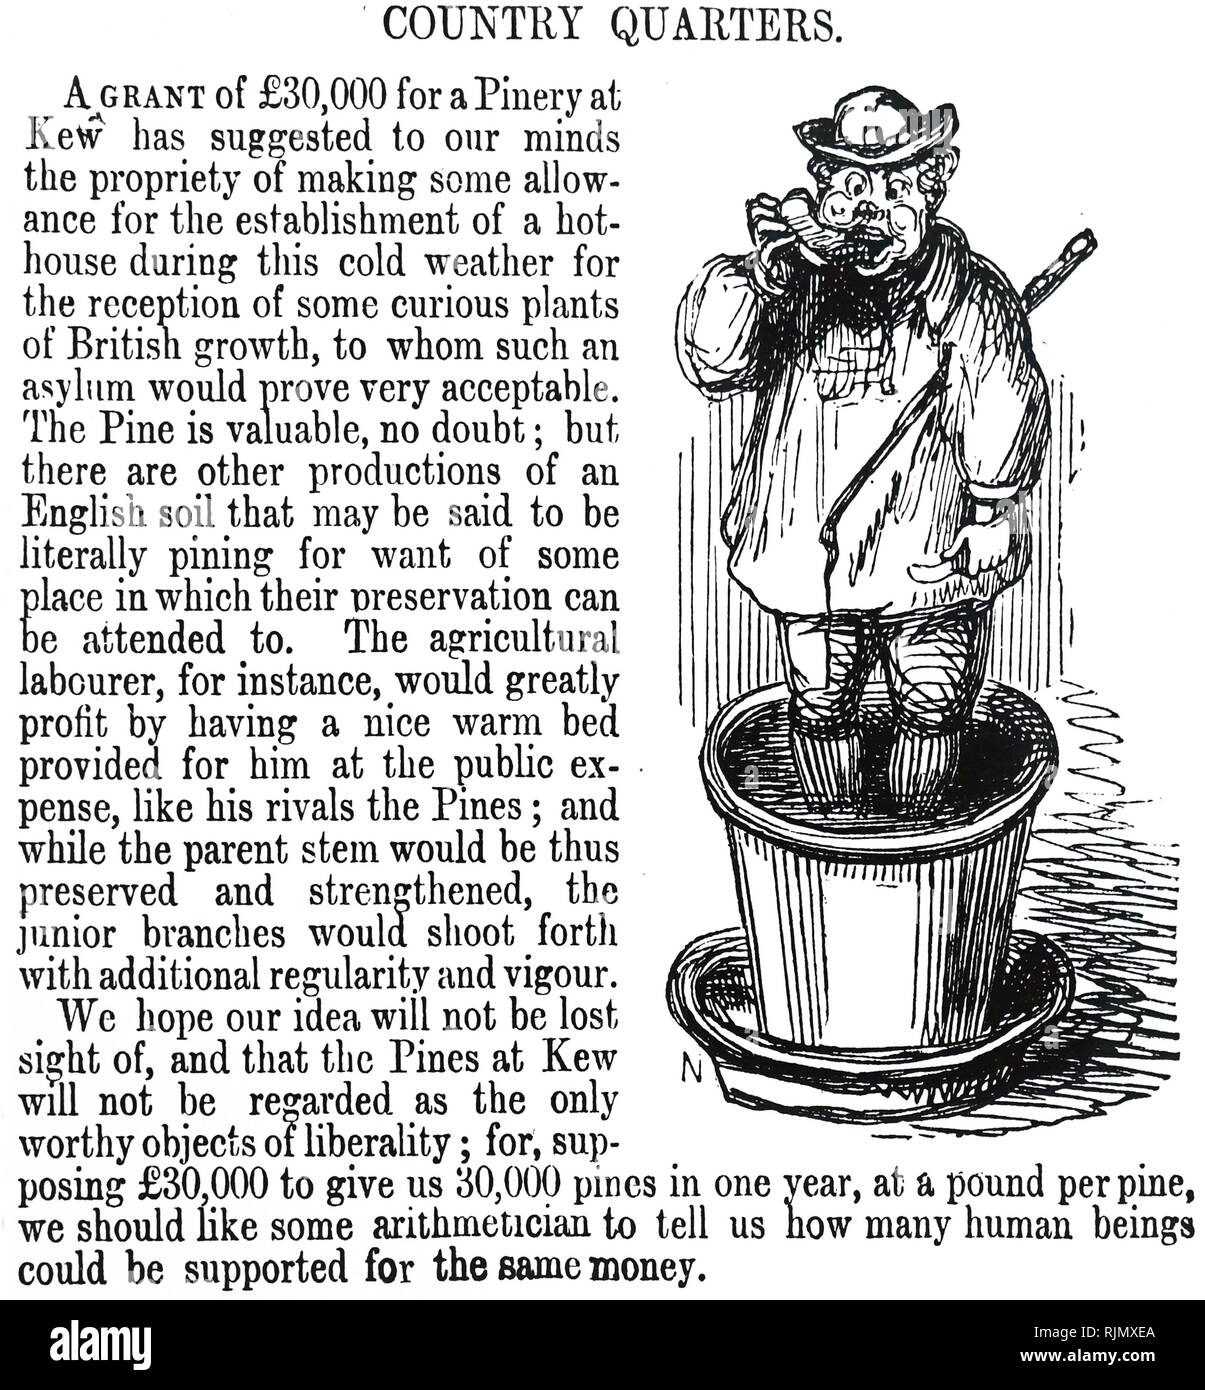 Un motivo per l'inglese operaio agricolo per essere come ben alloggiata come gli alberi nella pineta a Kew Gardens, Londra. Cartoon 1848 Foto Stock